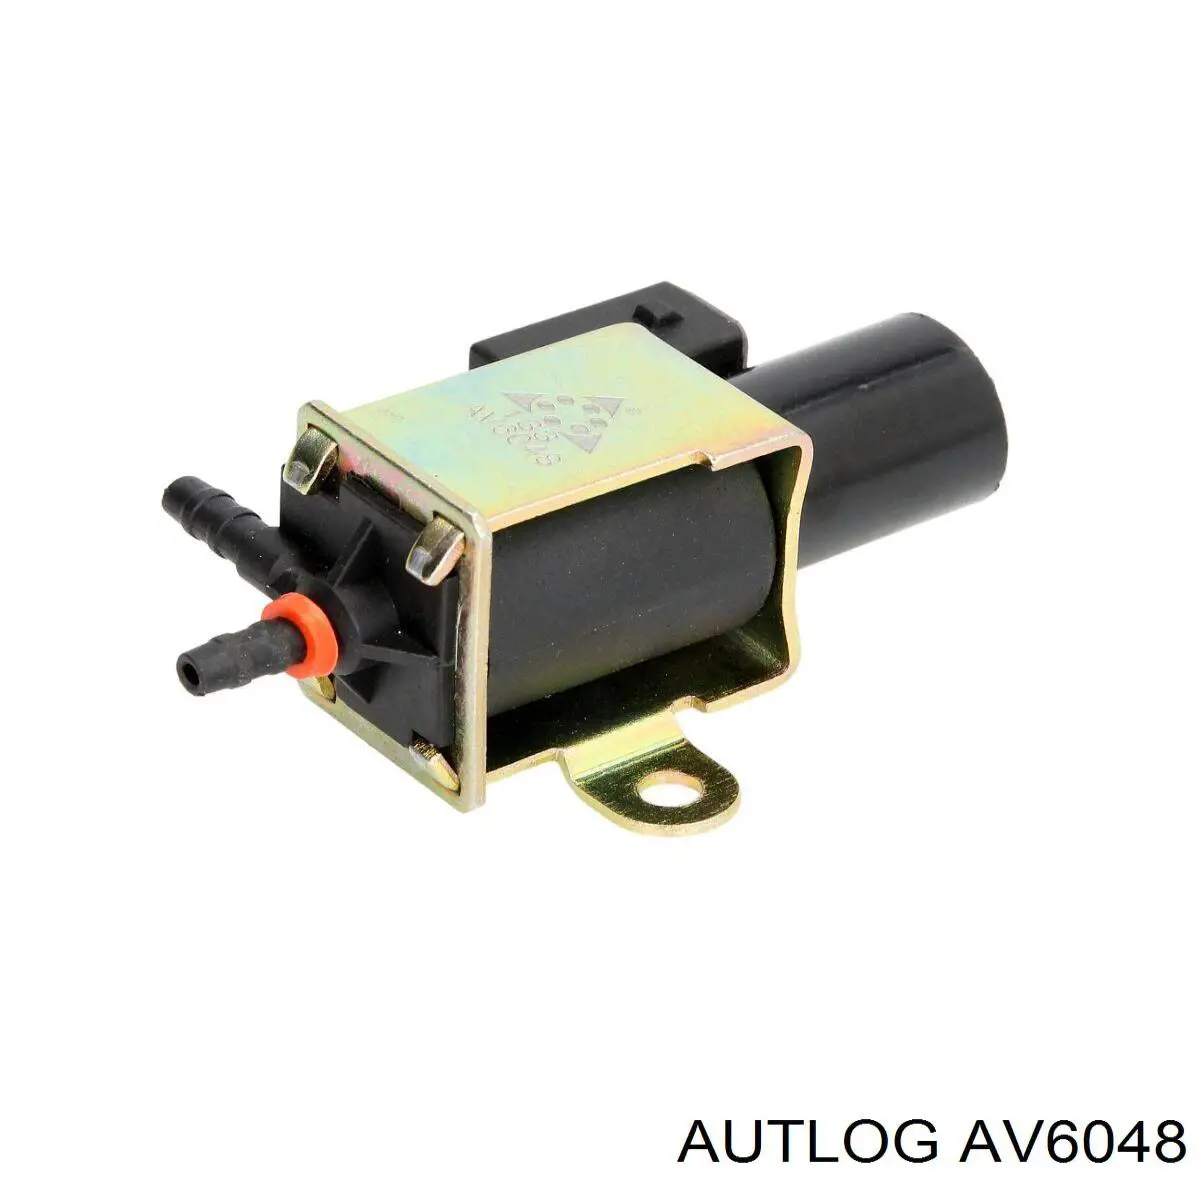 AV6048 Autlog клапан регулировки давления наддува